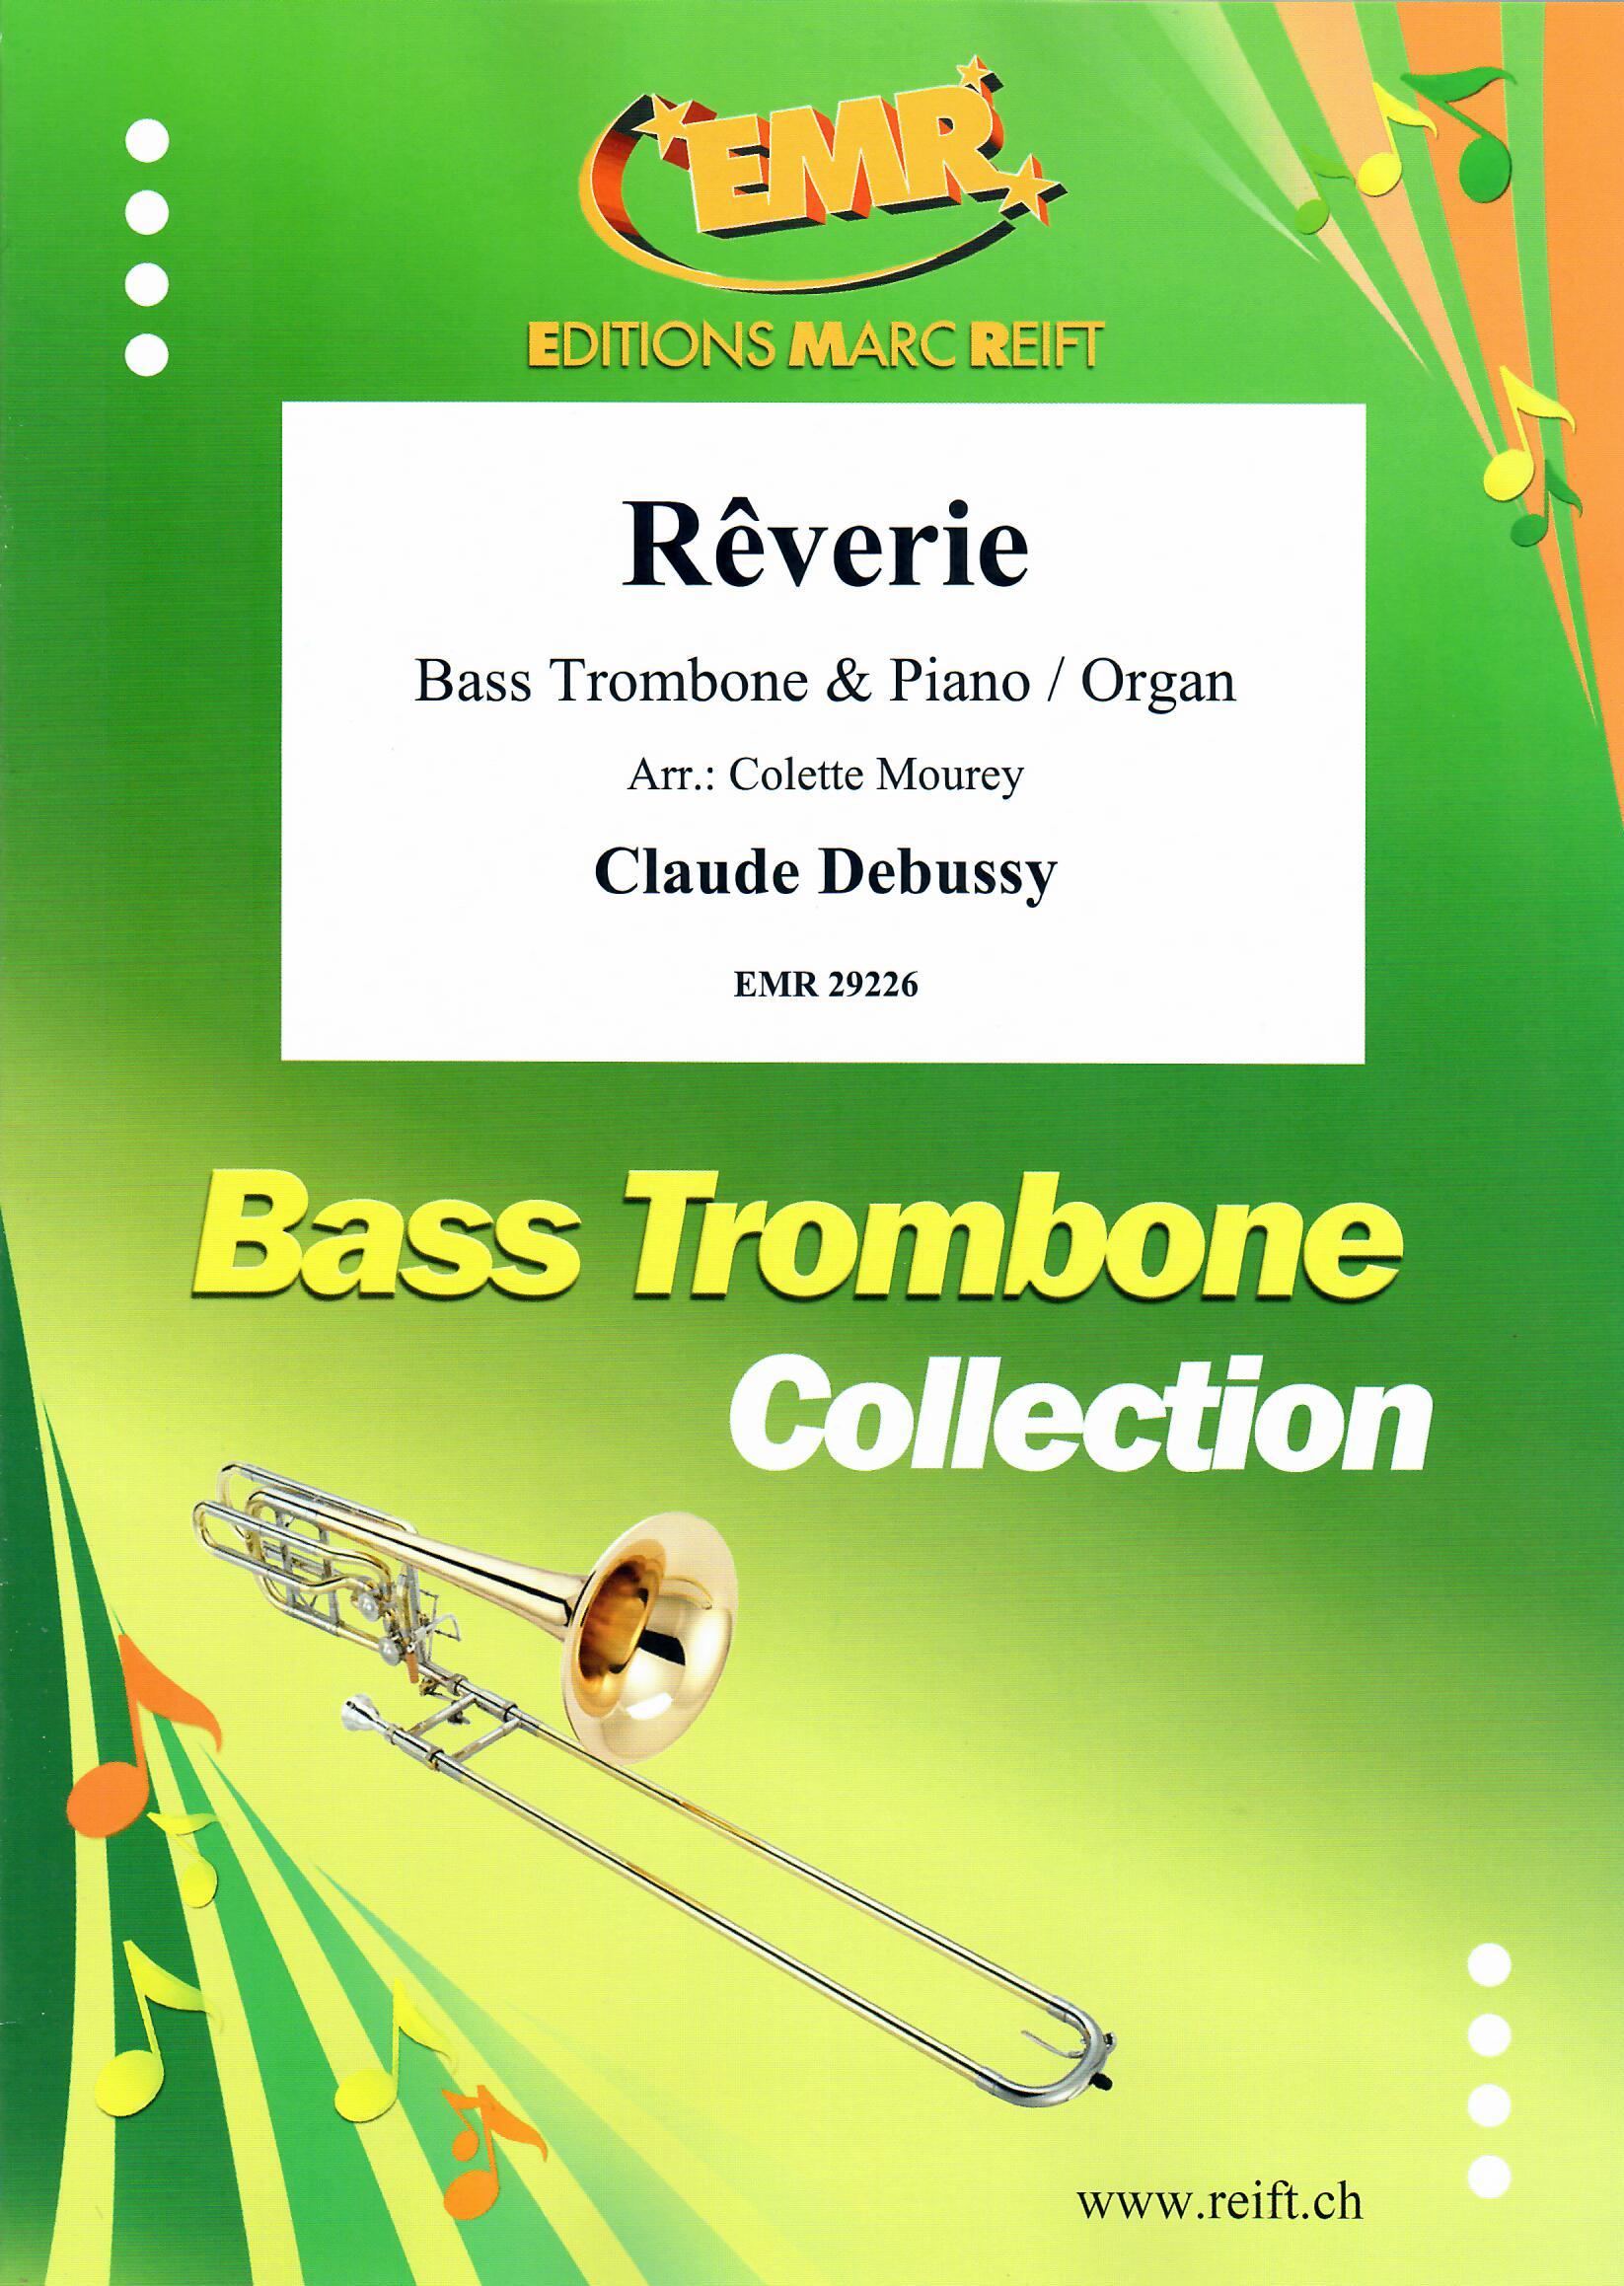 RêVERIE, EMR Bass Trombone